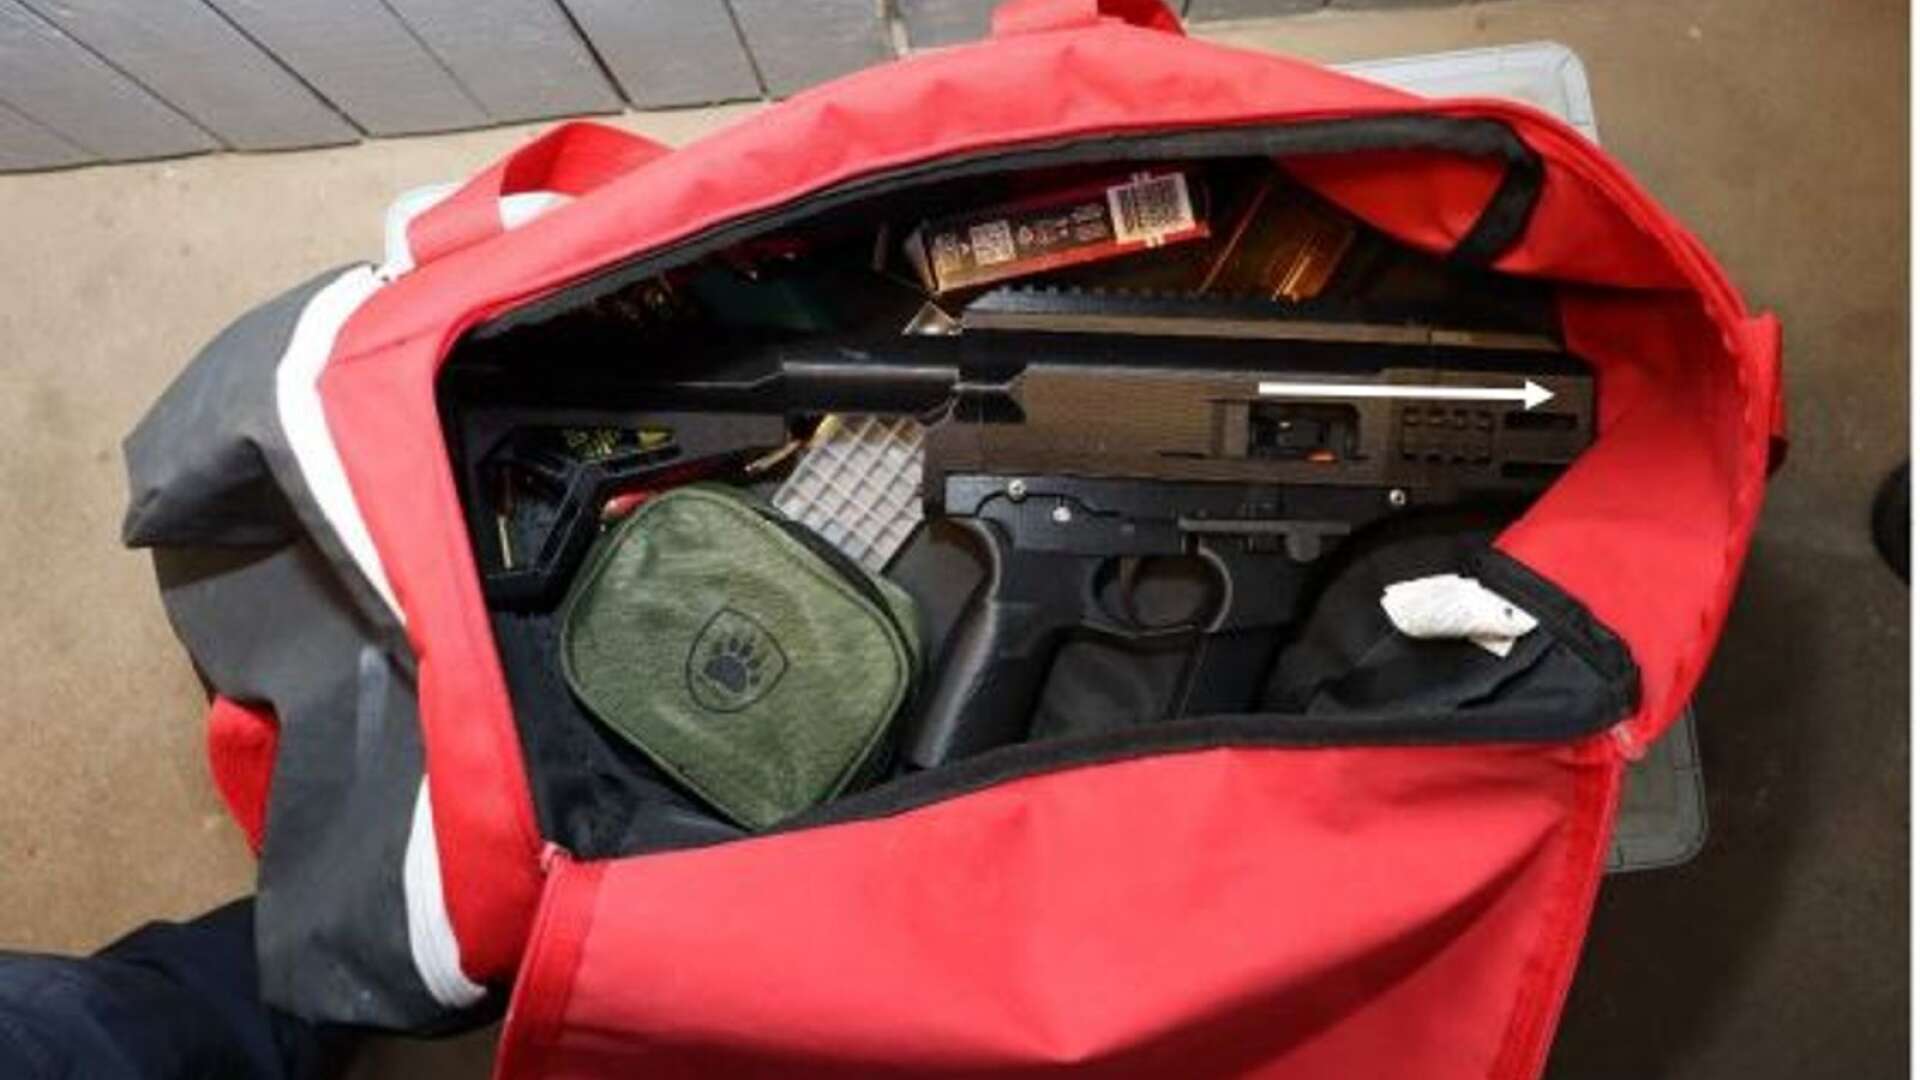 Väskan med kulsprutepistolen som påträffades i källaren.